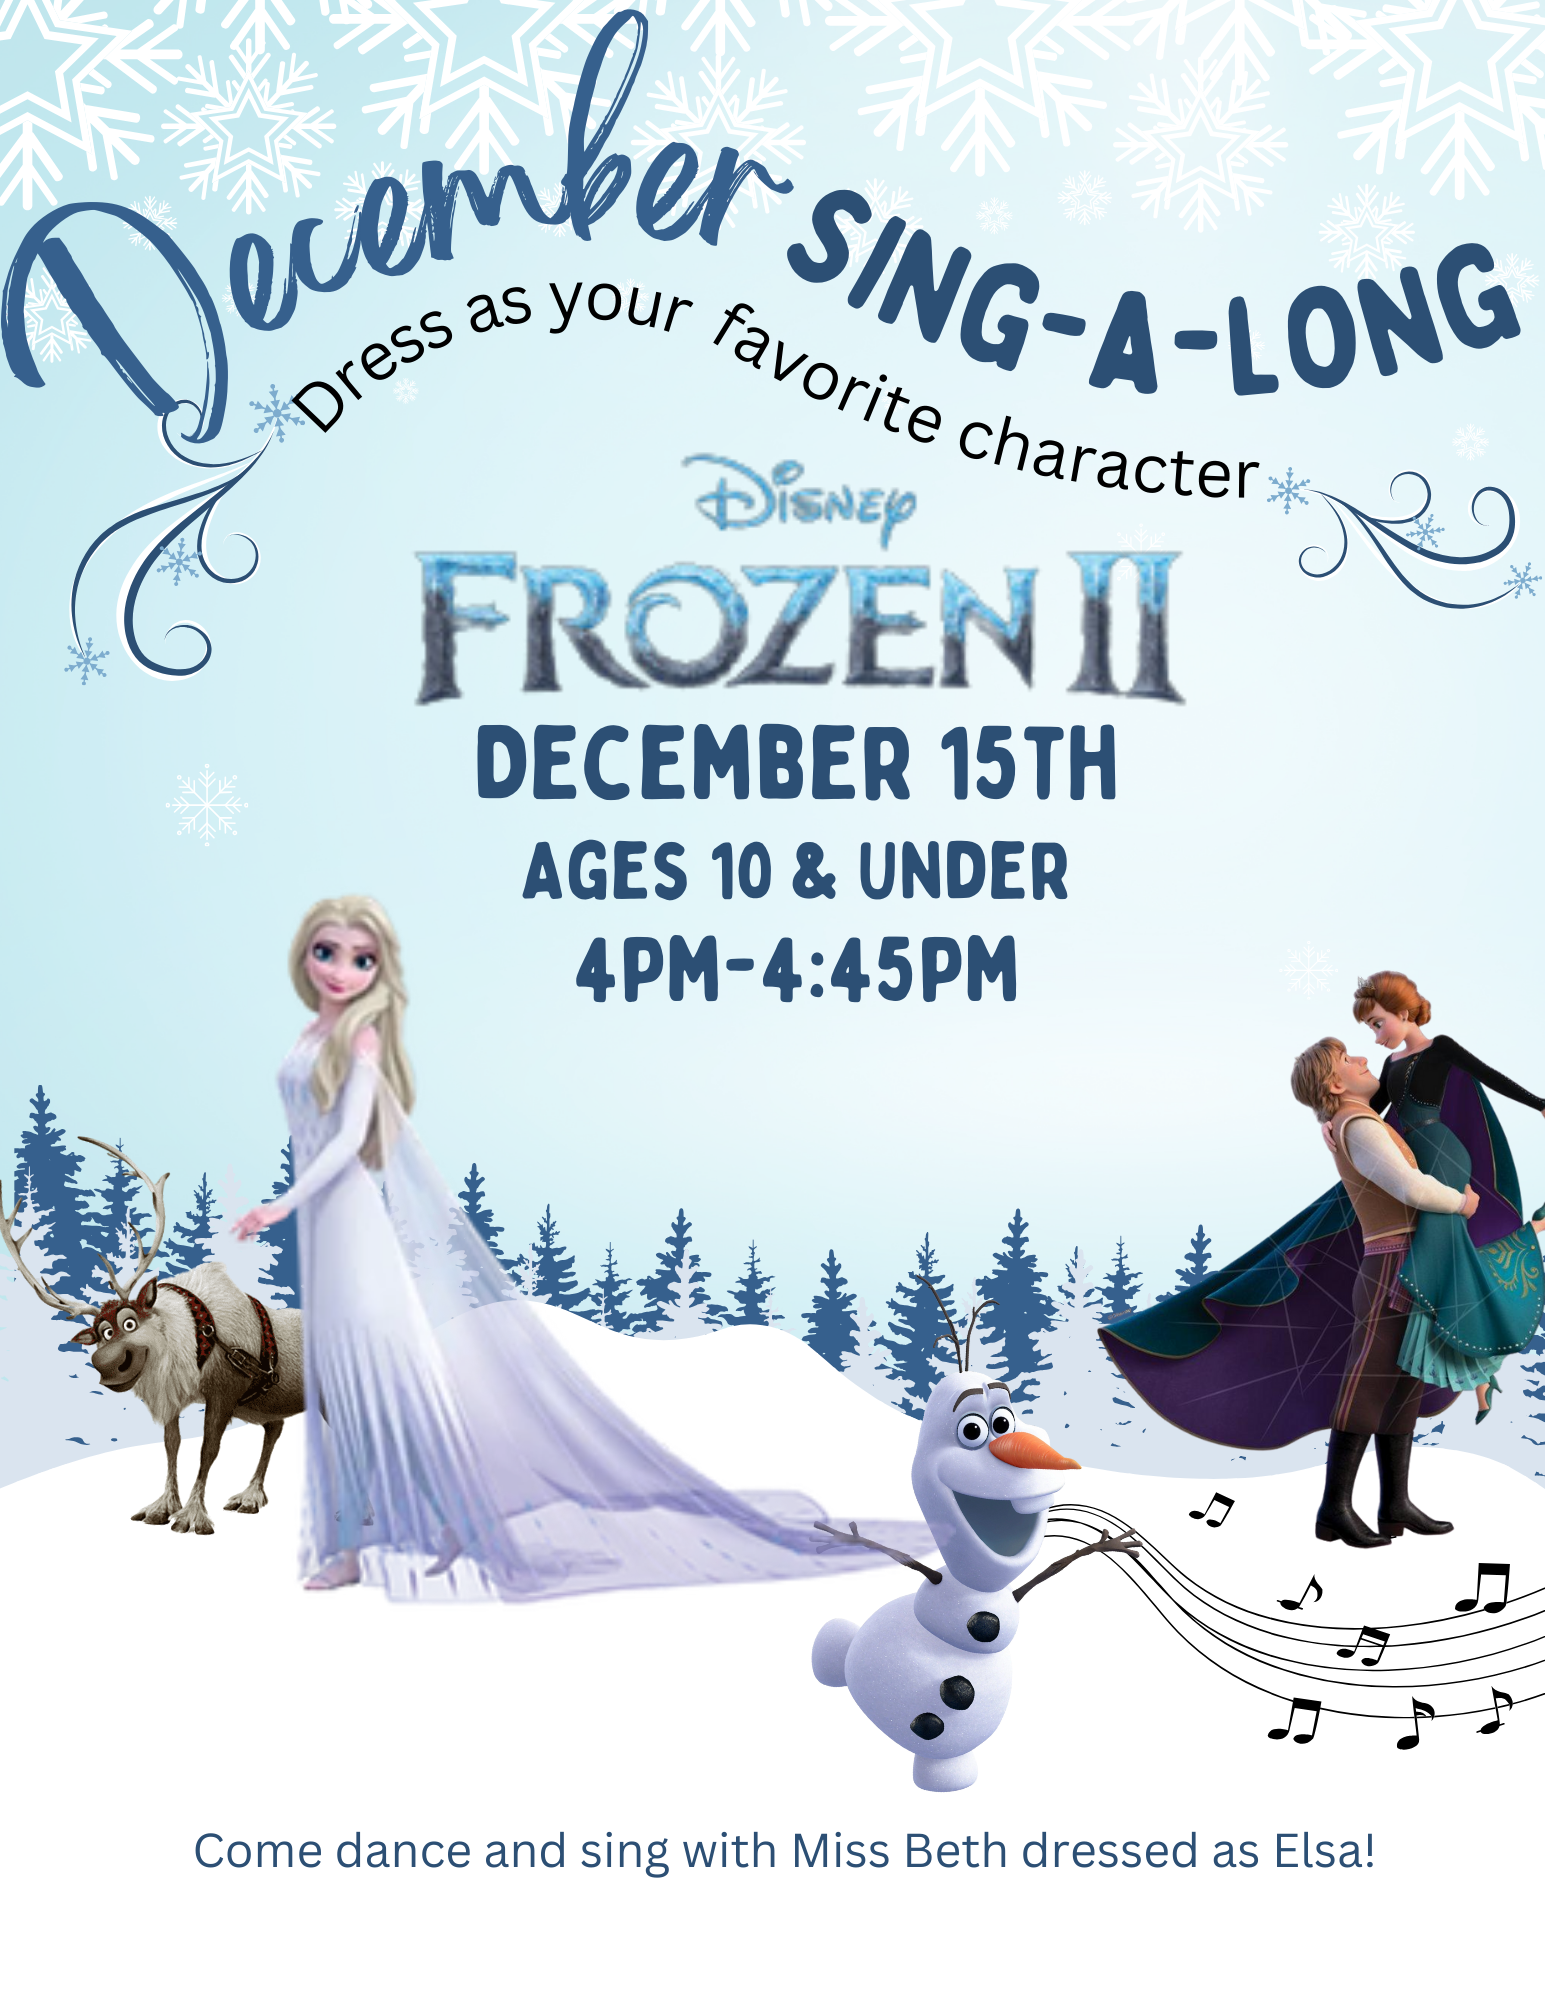 Frozen II Sing-a-long